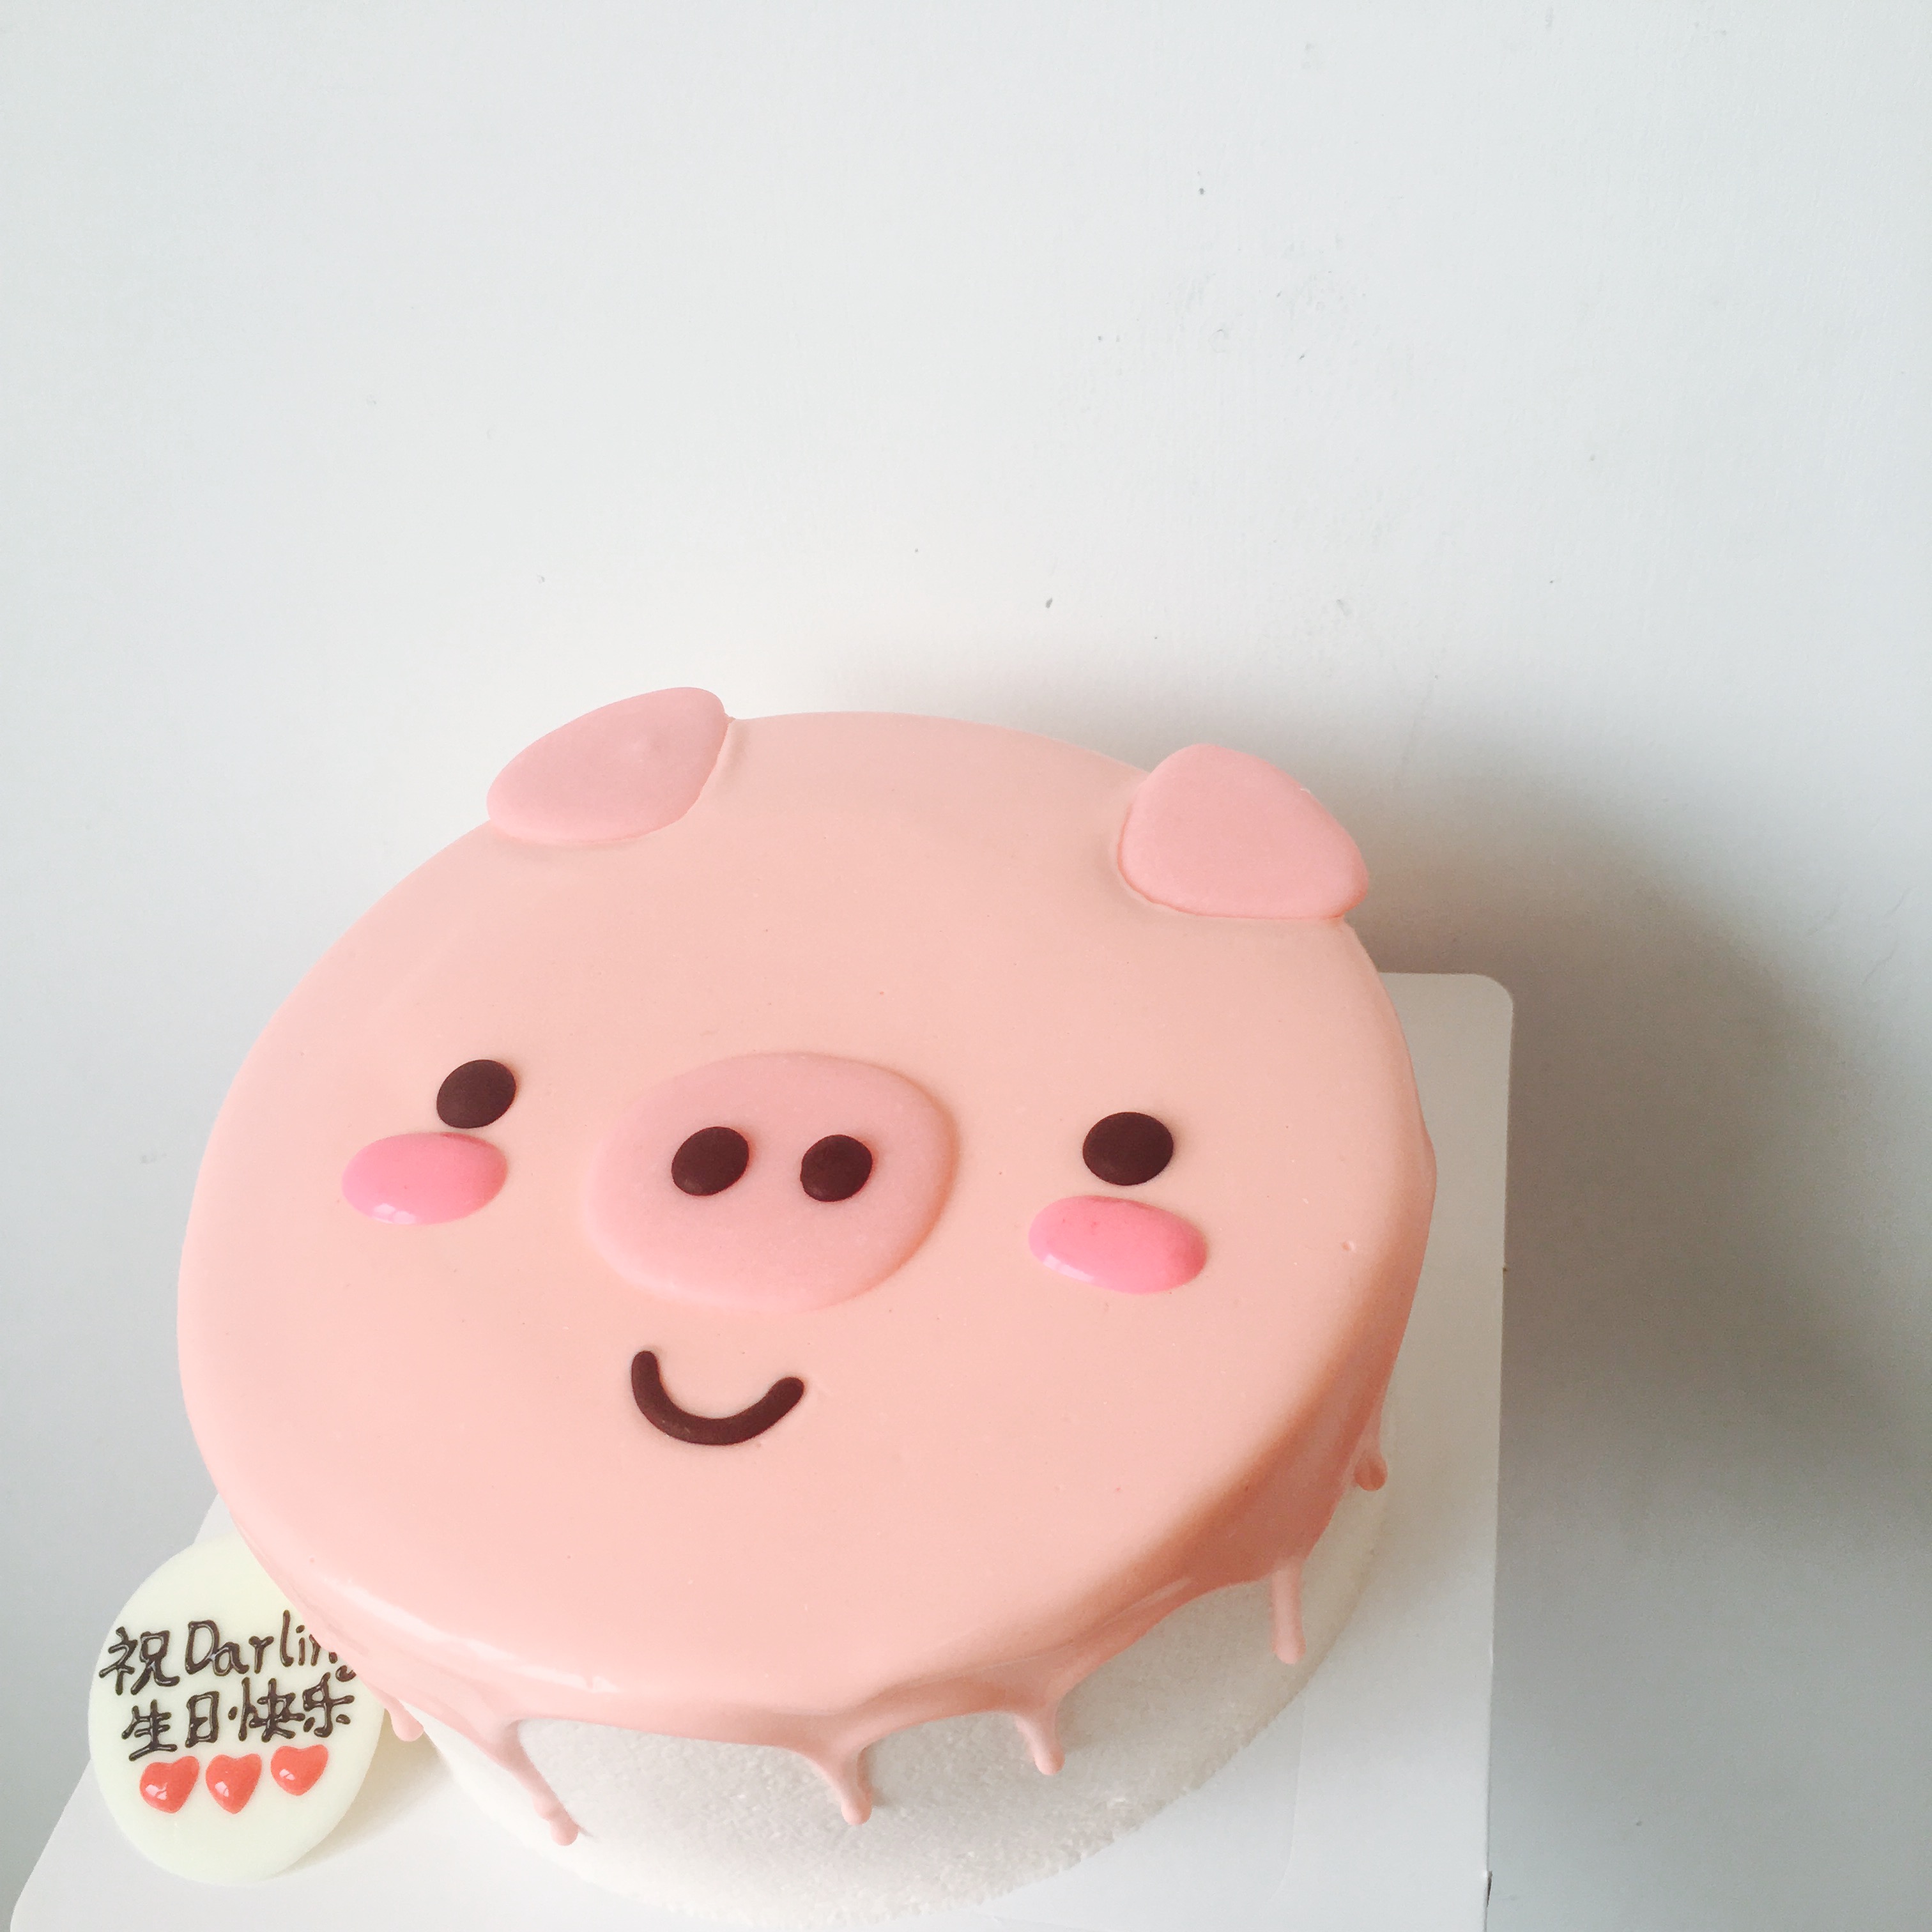 【卡通猪头】生日蛋糕 卡通造型蛋糕 猪头造型蛋糕